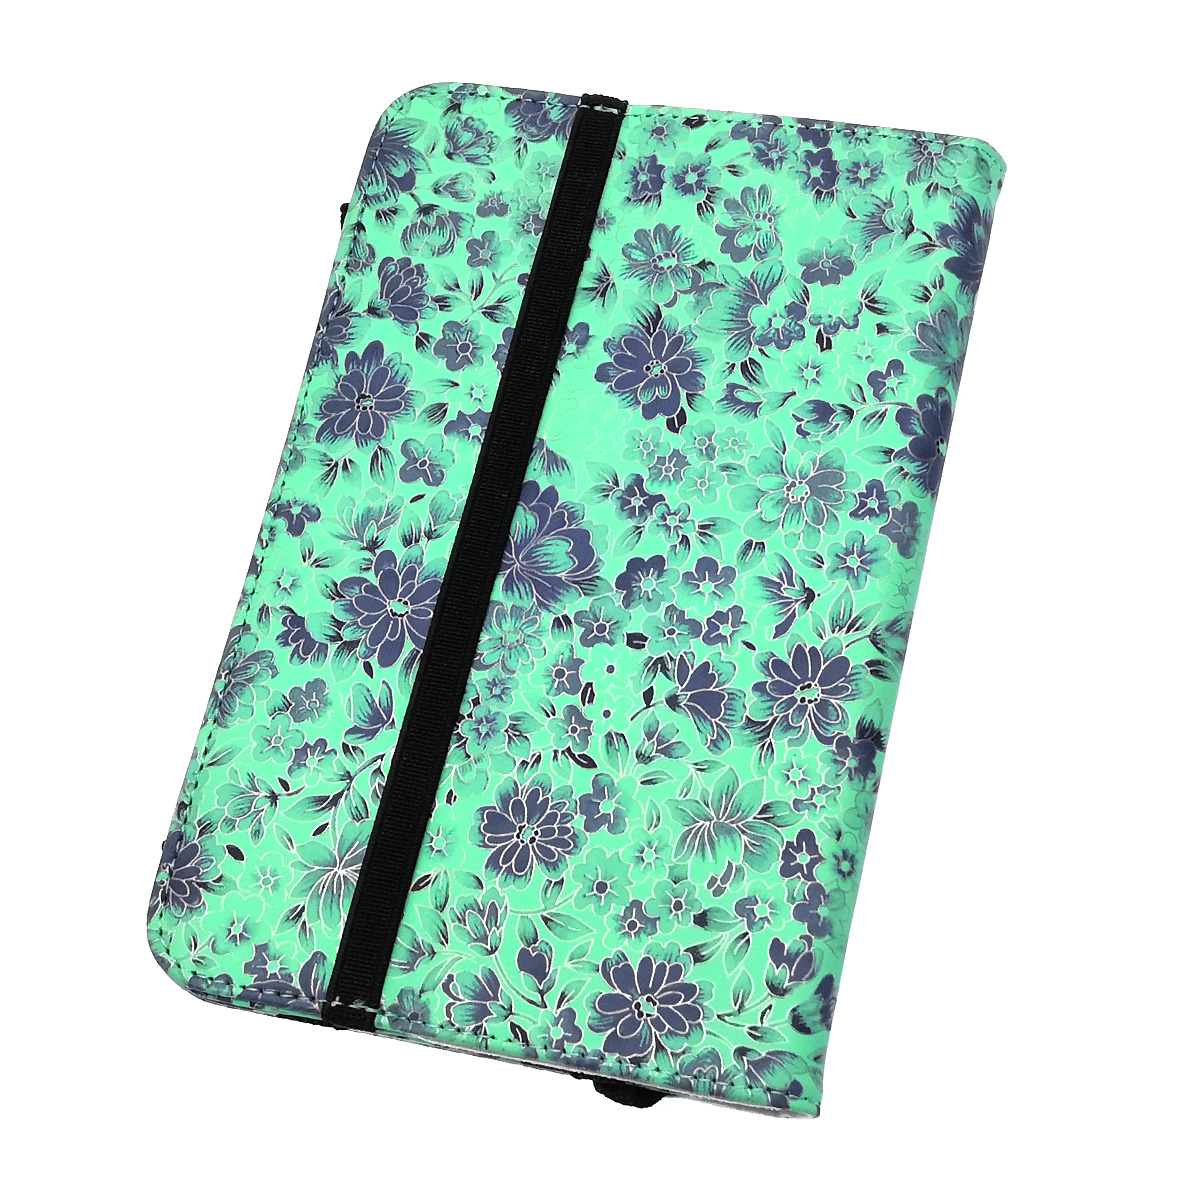 Чехол книжка универсальная для планшета диагональю 7.0, экокожа, цвет бирюзовый с цветочками